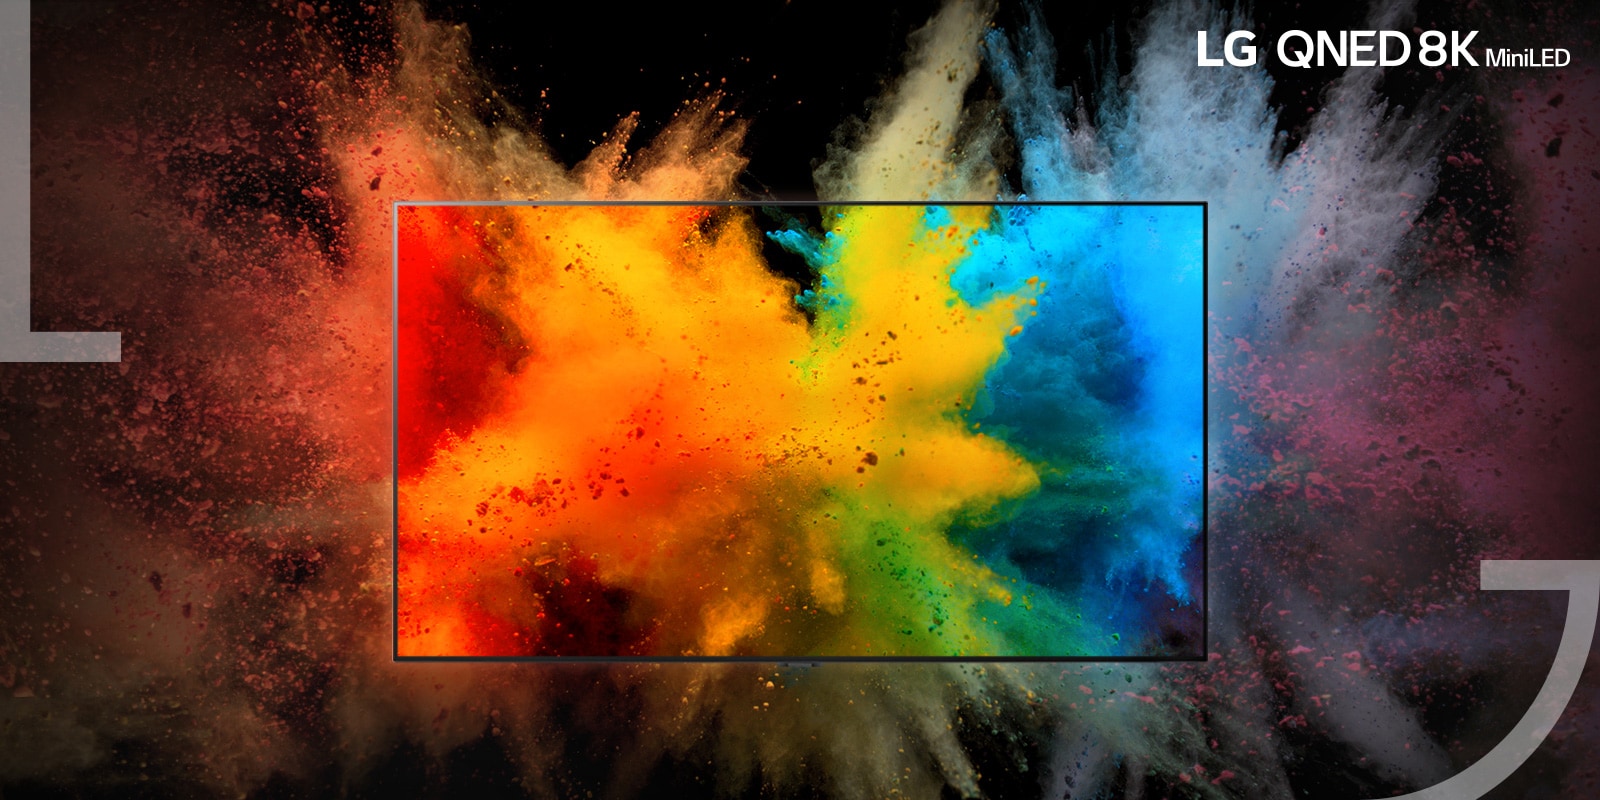 Középen egy TV helyezkedik el – színes por robban szét a TV monitoron, és a színes por a TV káváján kívülre is kiterjed.